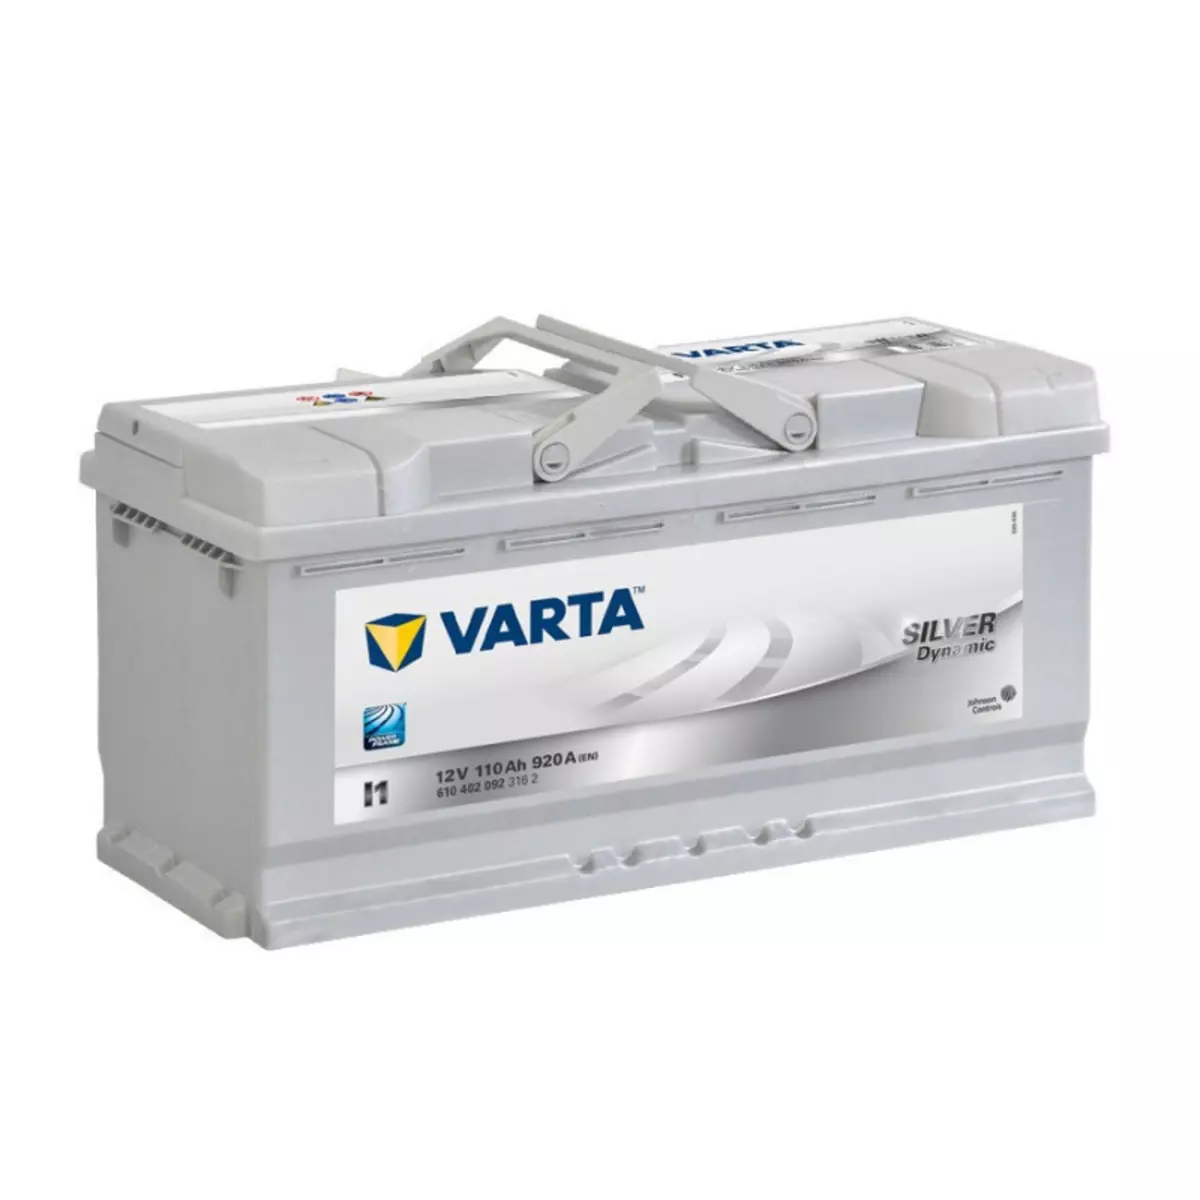 Varta Batterie Varta Silver Dynamic I1 12v 110ah 920A 610 402 092